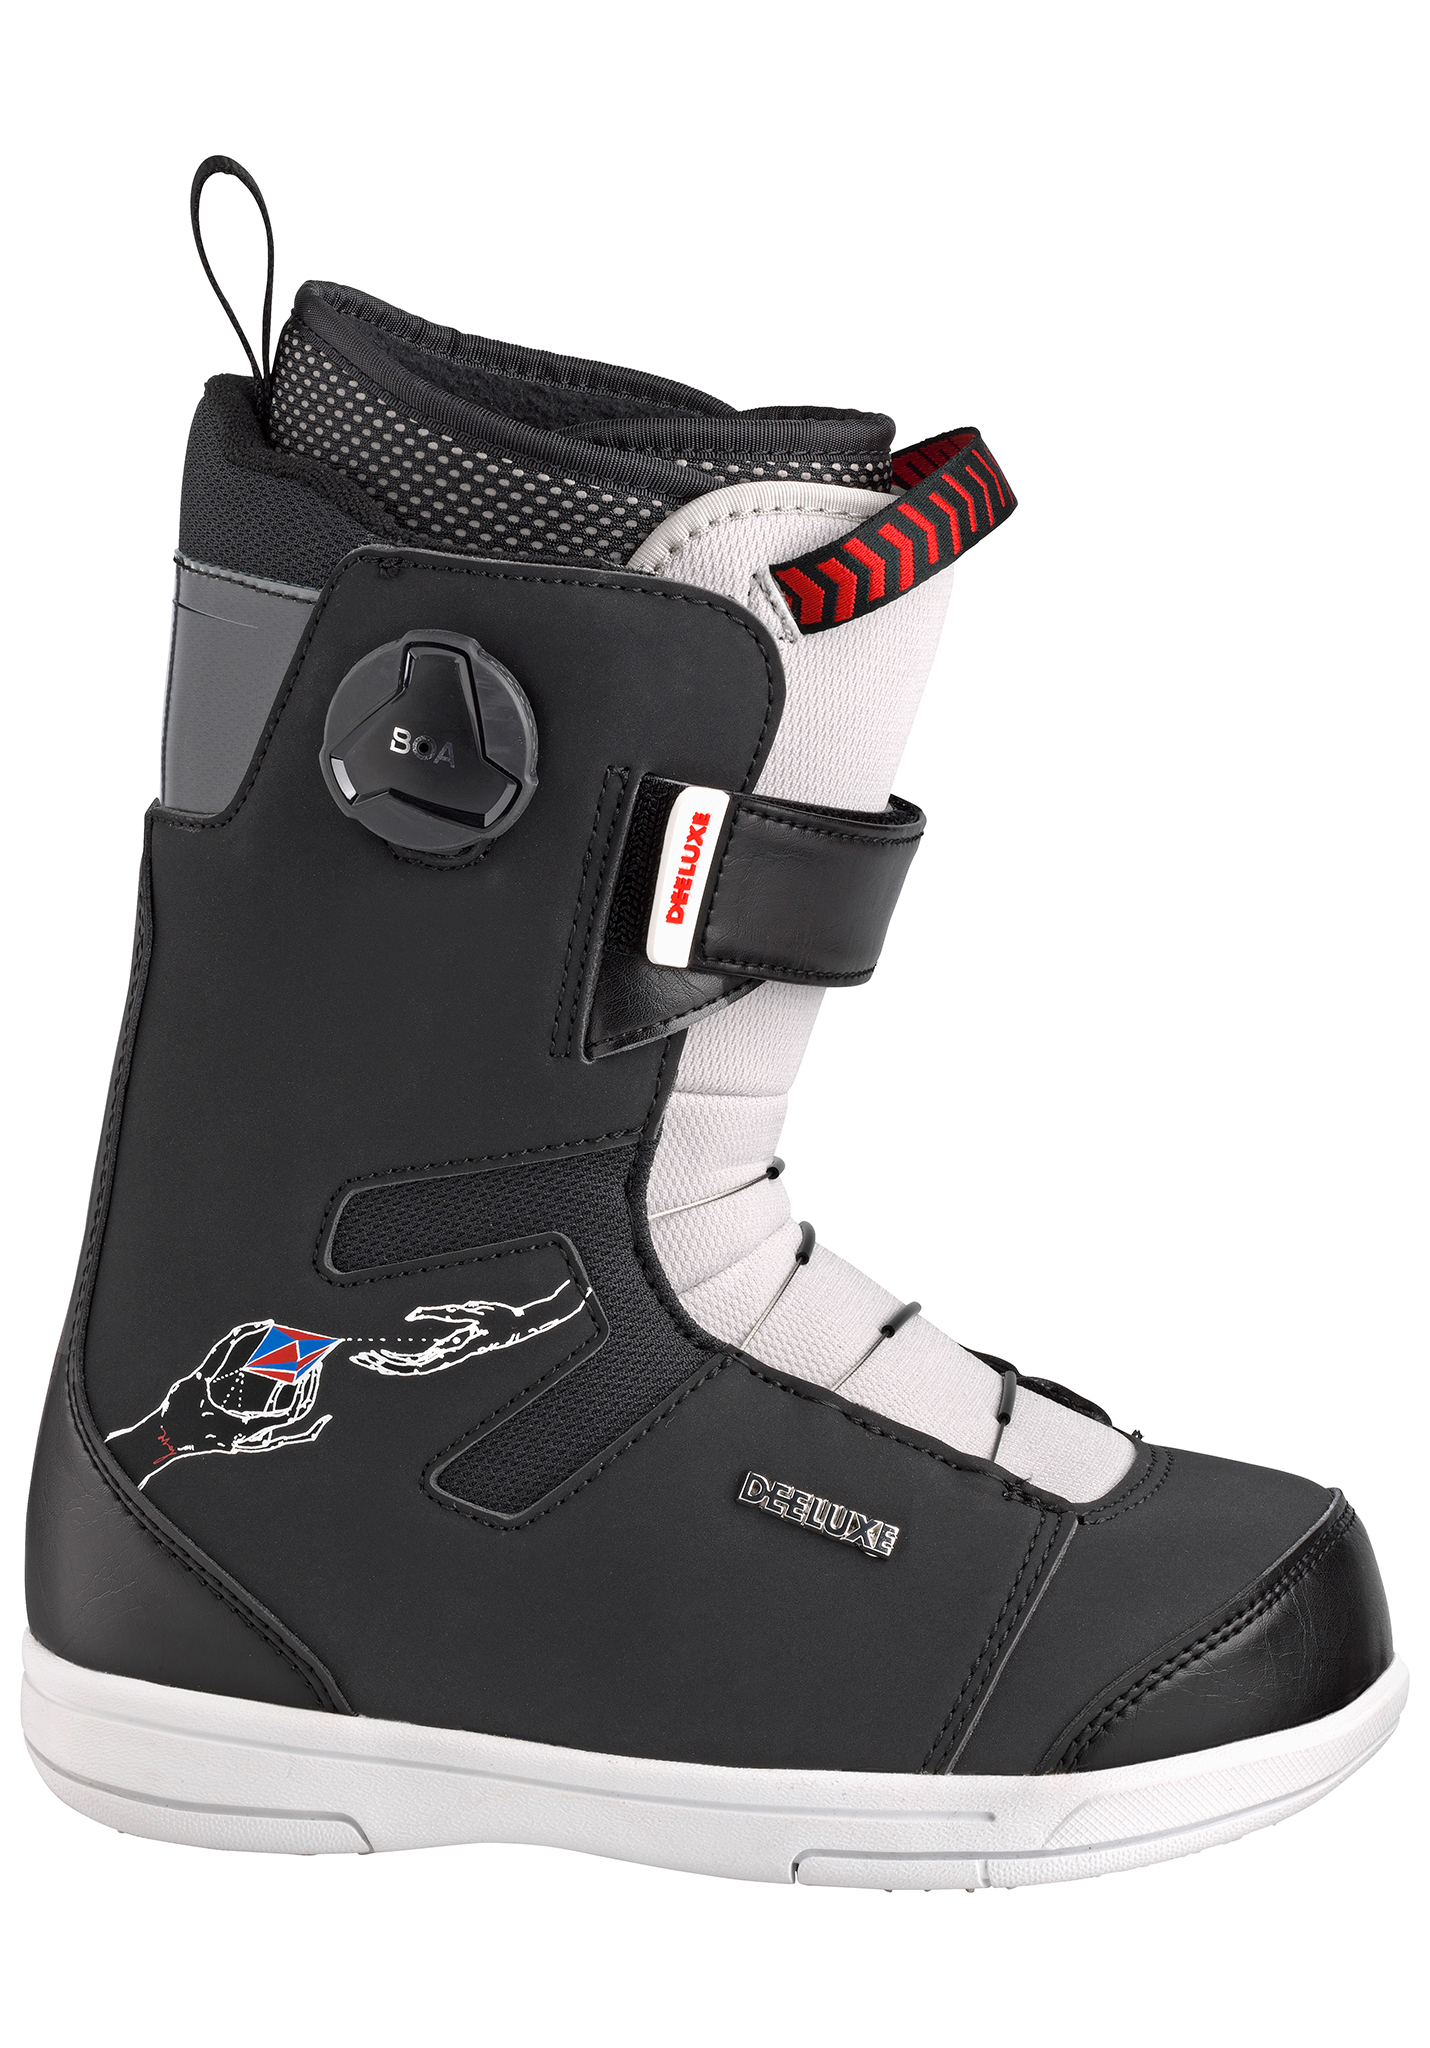 Deeluxe Junior (Rough Diamond) Snowboard Boots black 33,5